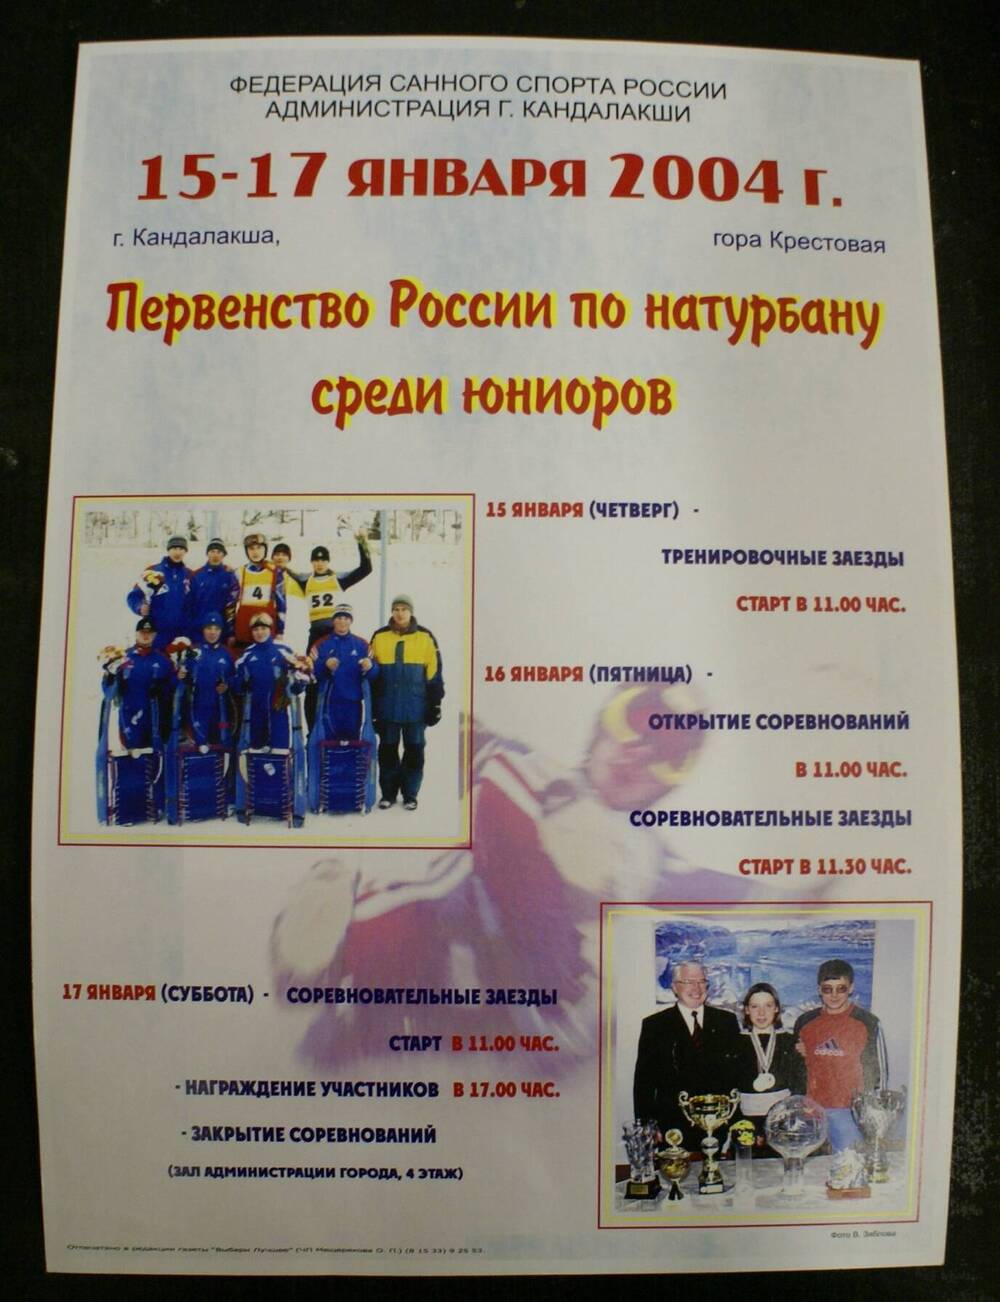 Афиша цветная первенства России по натурбану среди юниоров с программой на 15-17 января 2004 г. с использованием двух фотографий В.Зяблова.